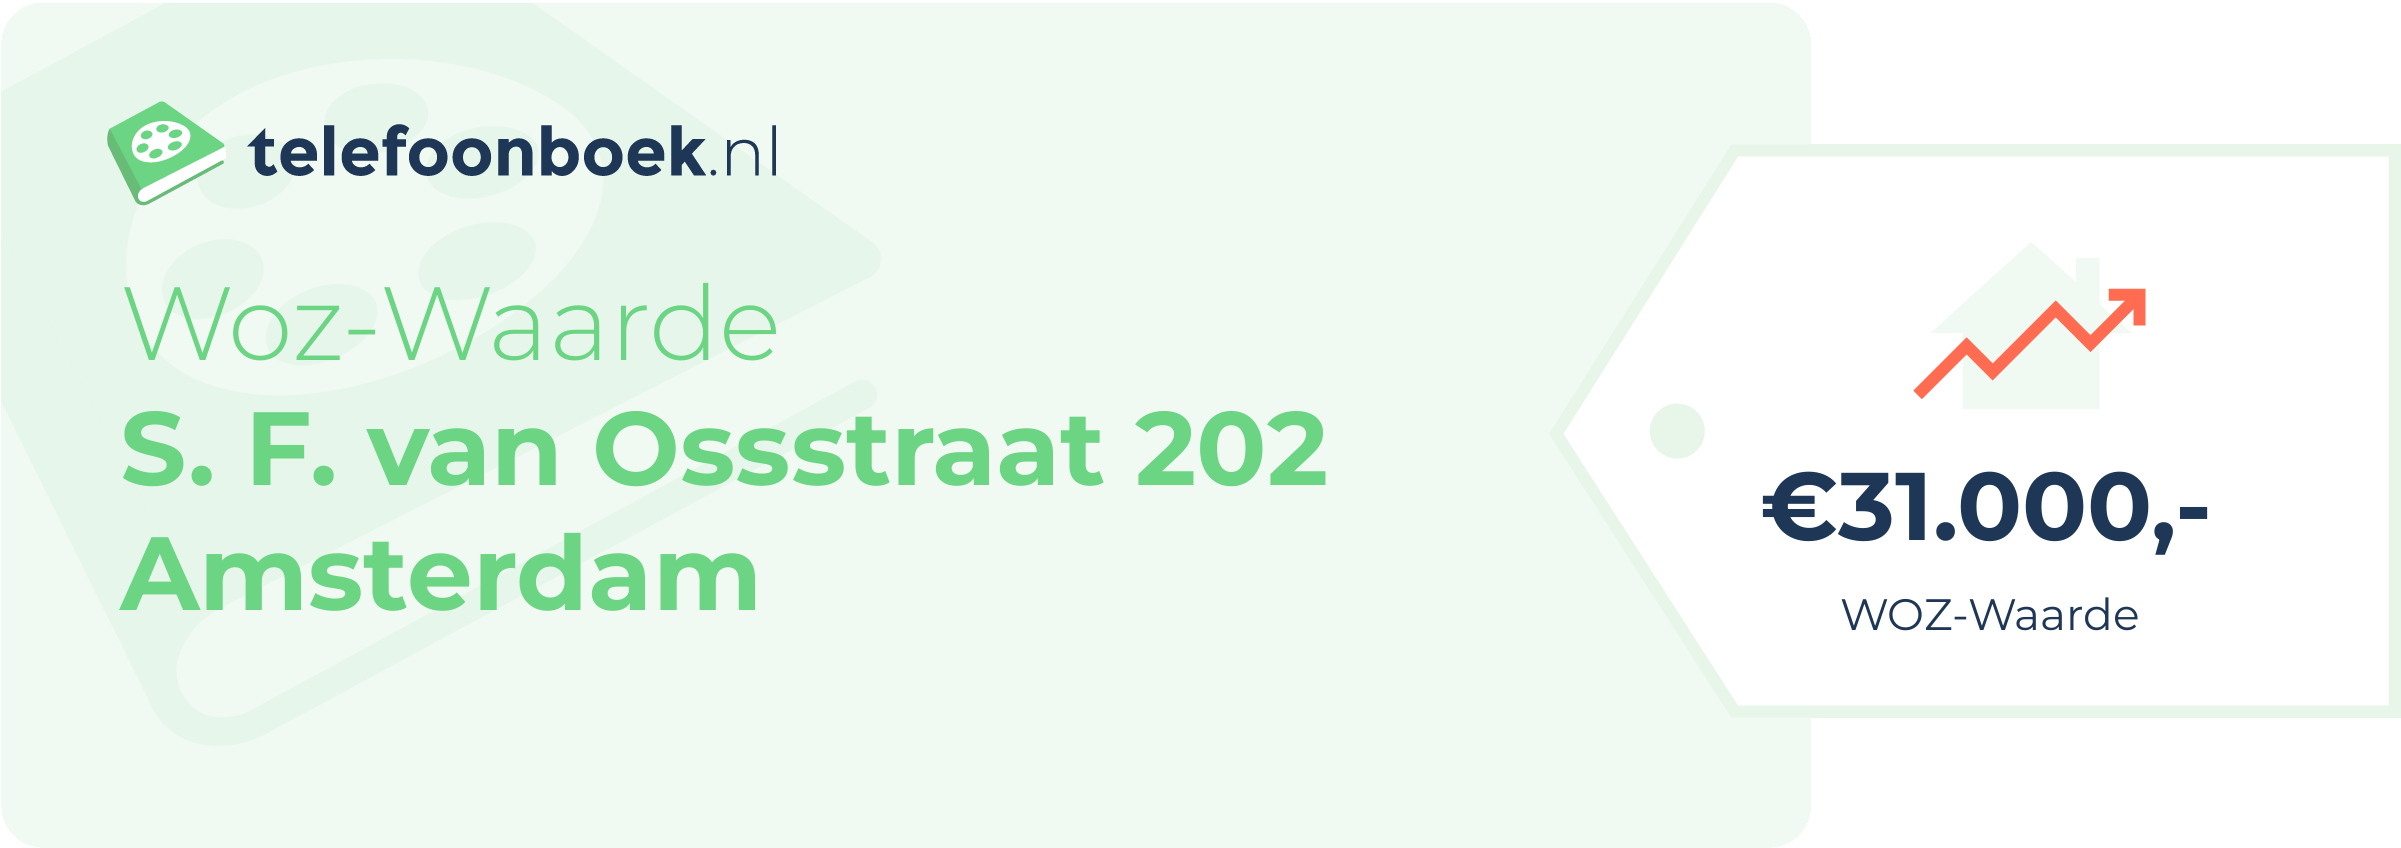 WOZ-waarde S. F. Van Ossstraat 202 Amsterdam